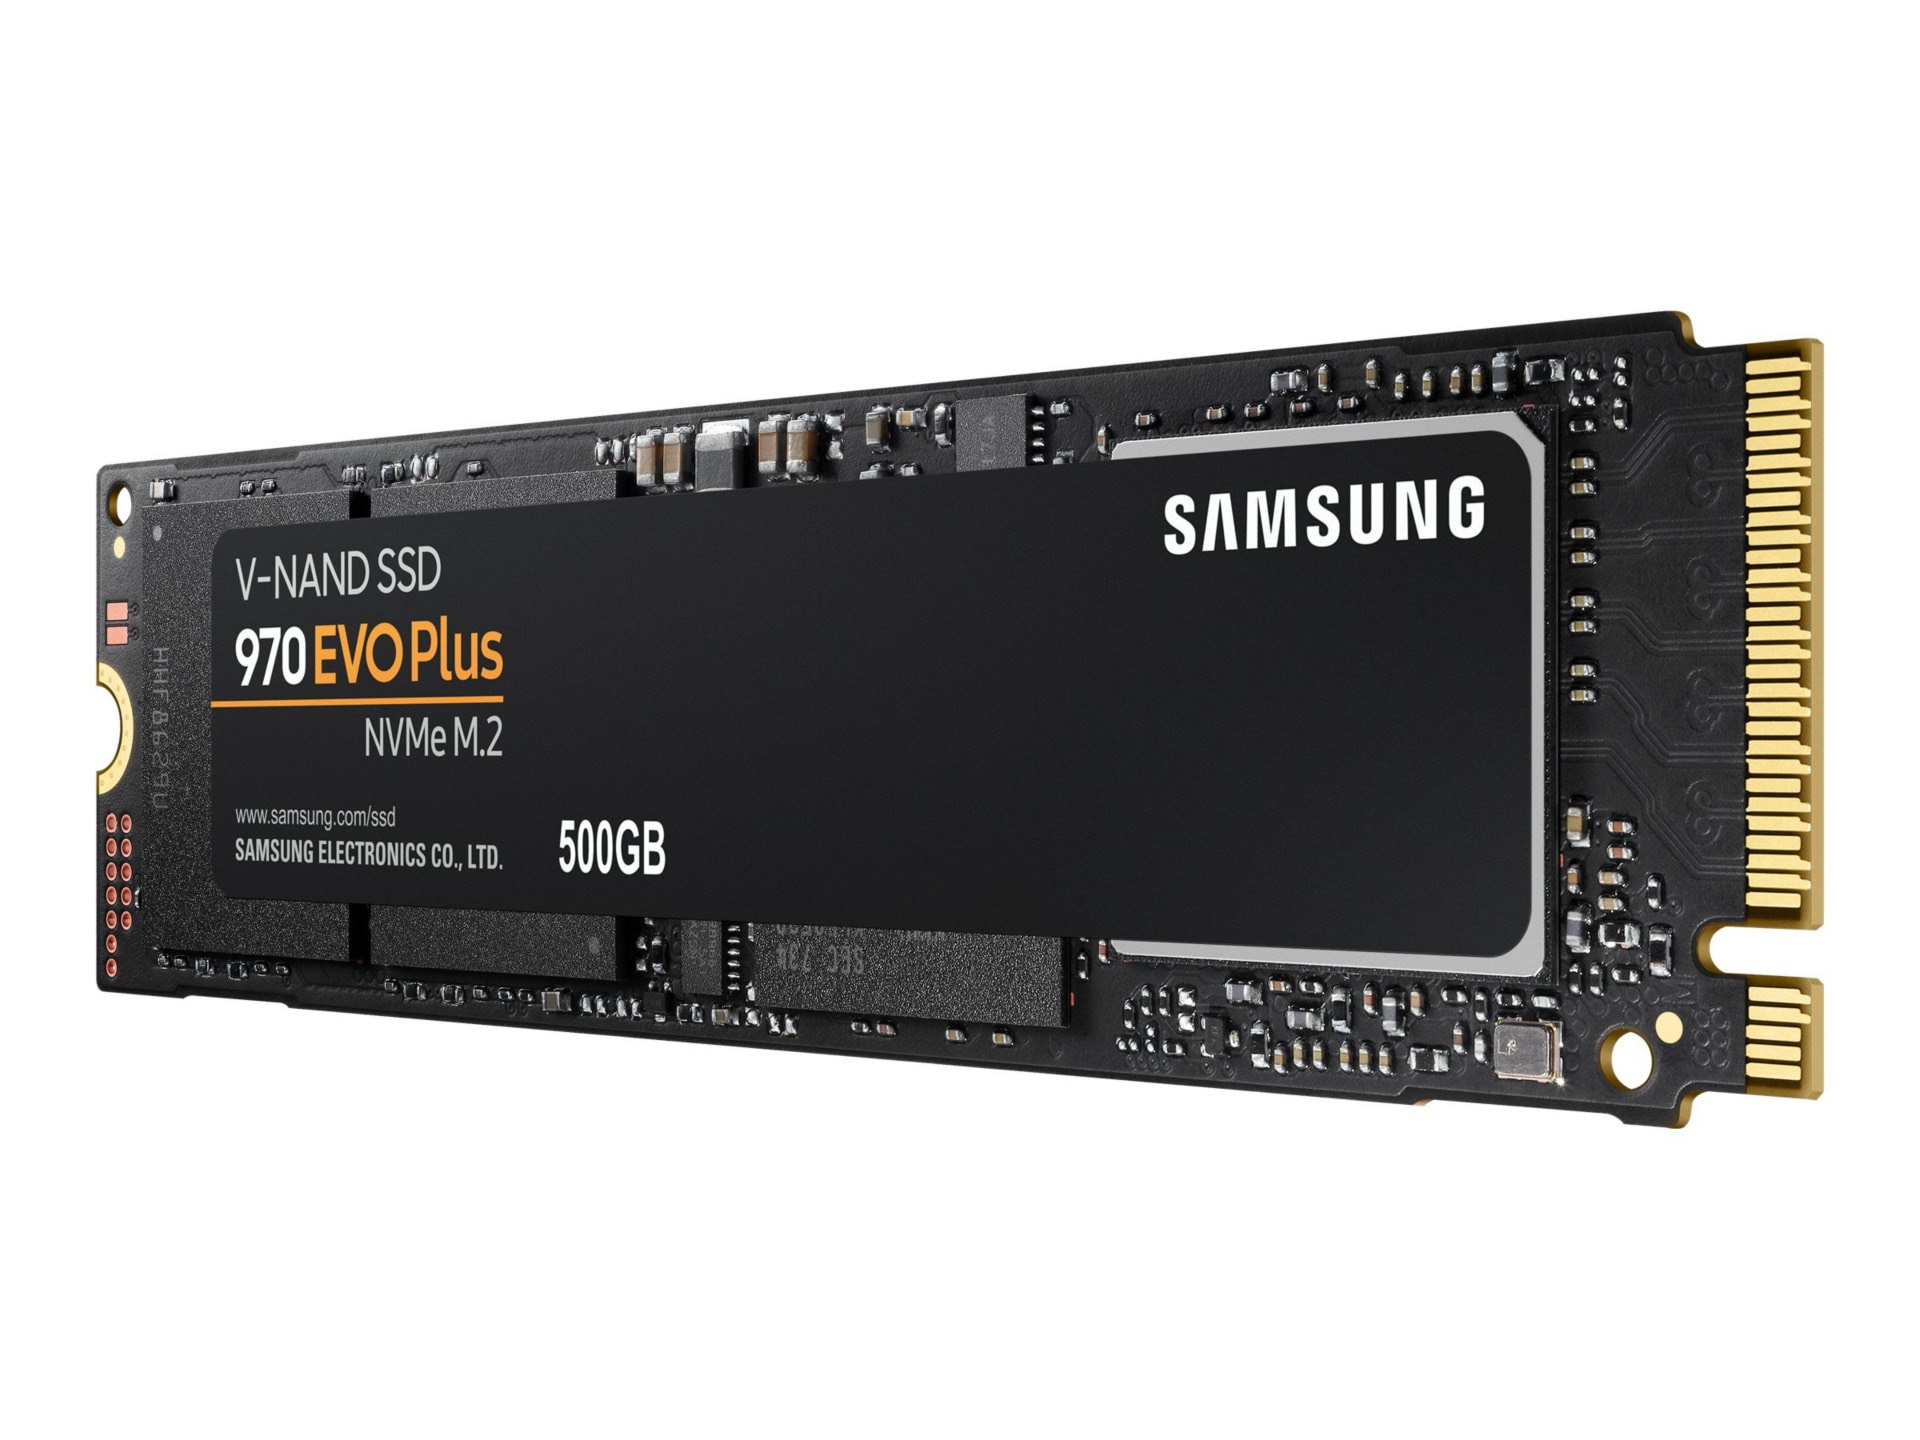 Samsung 970 EVO Plus 500GB PCIe NVMe M.2 Drive - MZ-V7S500B/AM - -